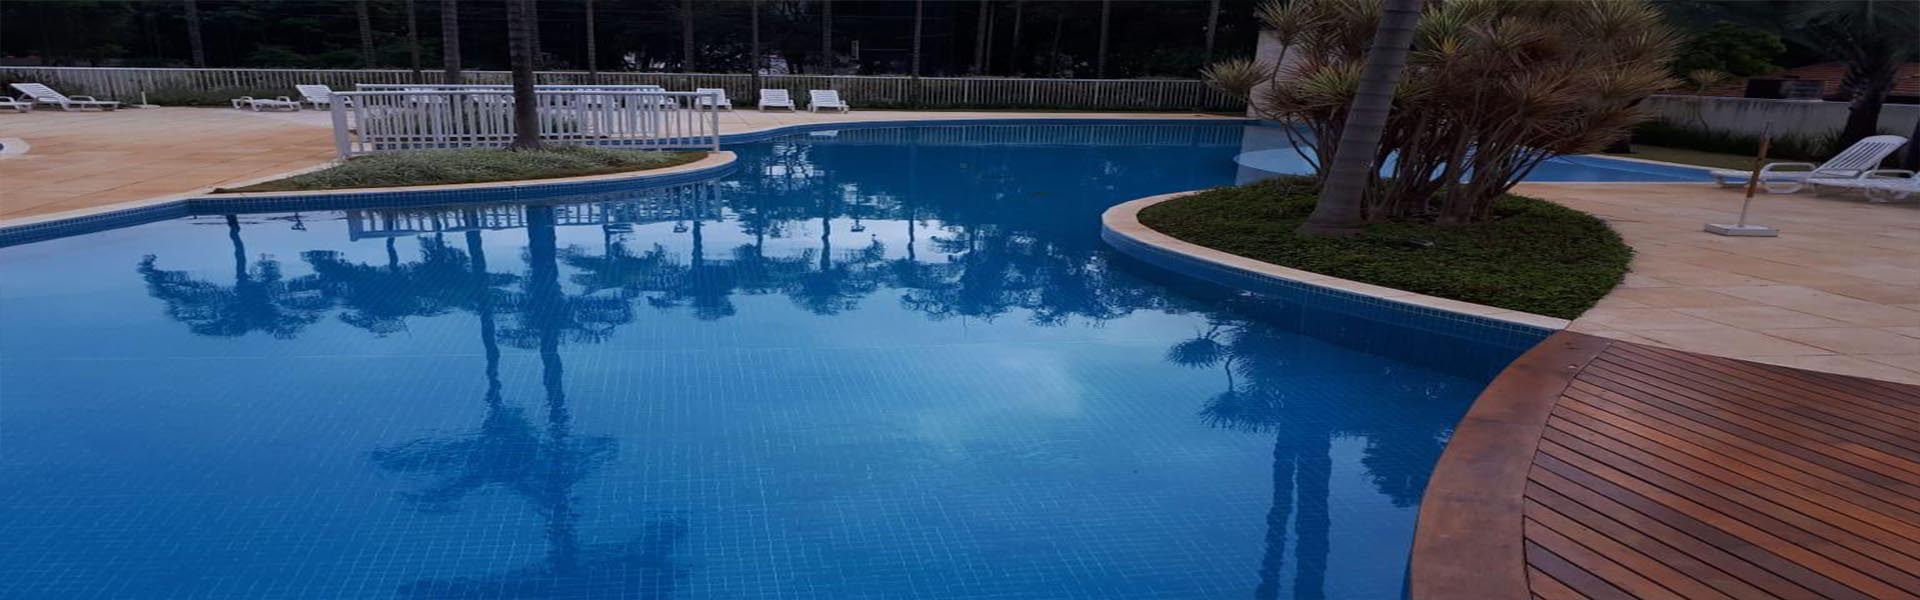 Empresa especializada limpeza de piscinas em São Paulo